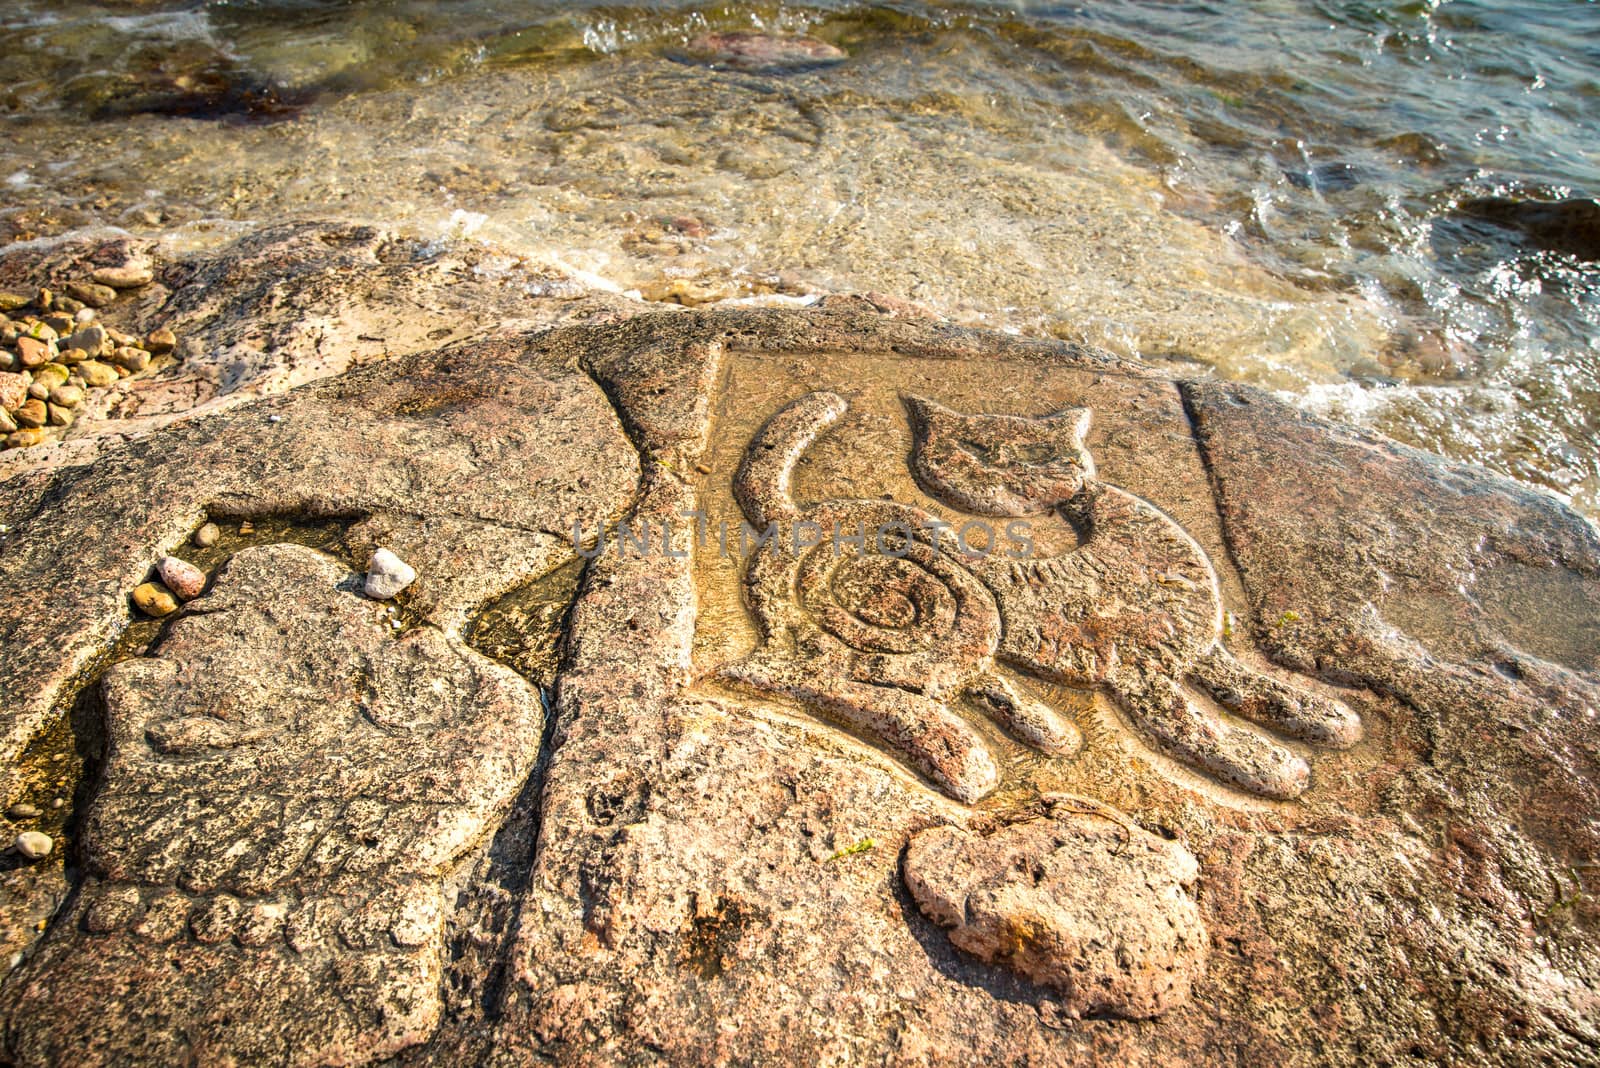 Rock carvings on the beach (cat and head) near Sevastopol (Crimea), Ukraine, May 2013